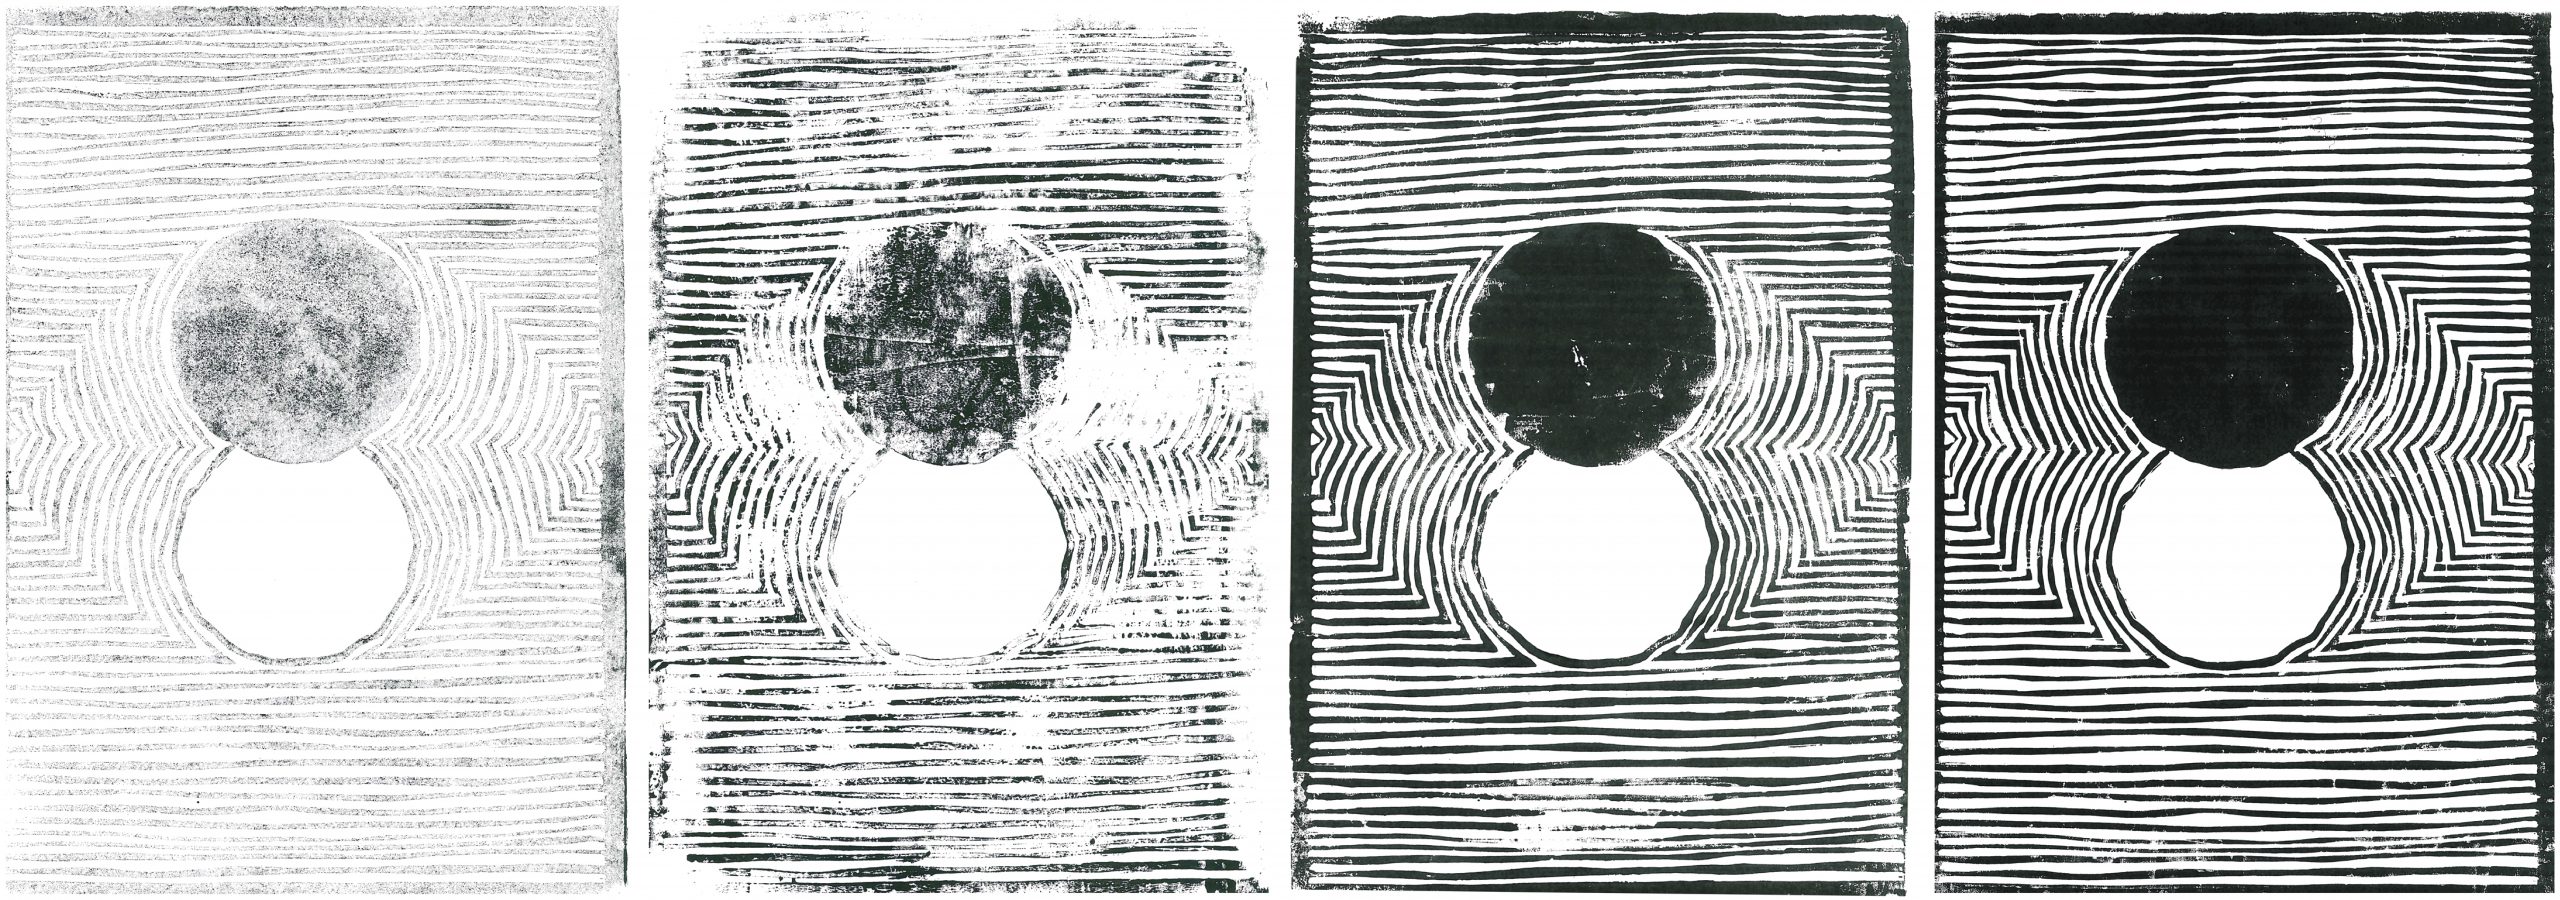 Présentation de 4 linogravures à l'encre noire sur du papier blanc. La première est très peu encrée, la deuxième un peu plus, ect, jusqu'à la quatrième qui présente l'illustration du projet avec un noir très intense et quasiment aucunes imperfections.